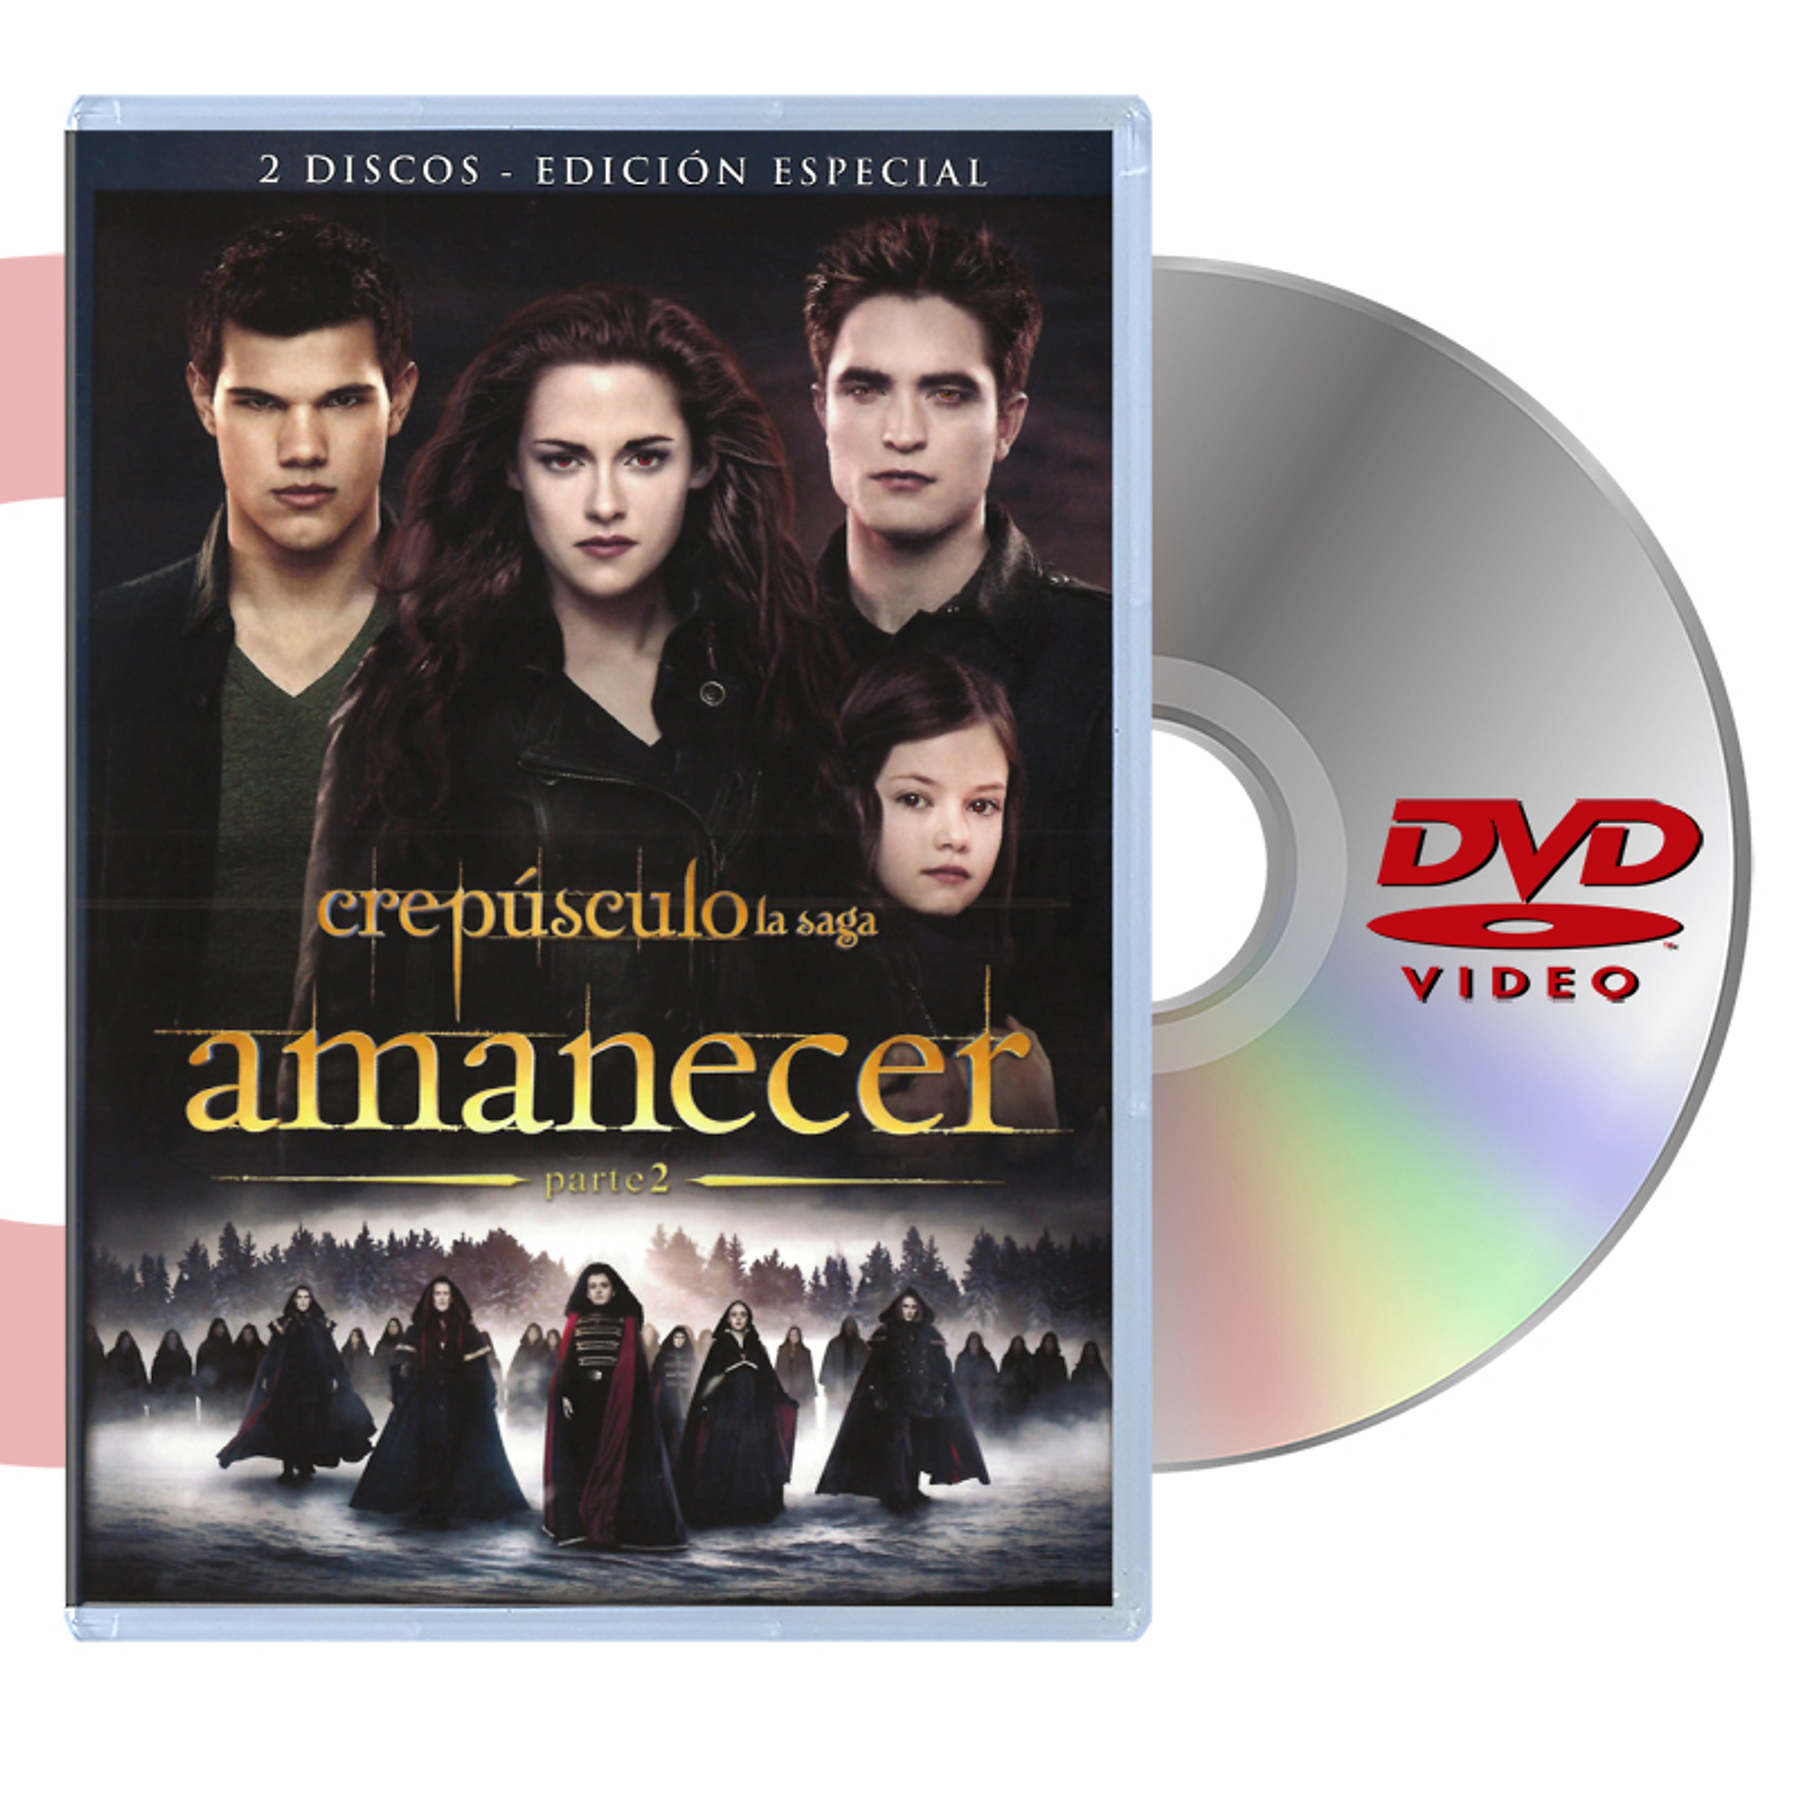 DVD AMANECER PARTE 2: (2 DISCOS)